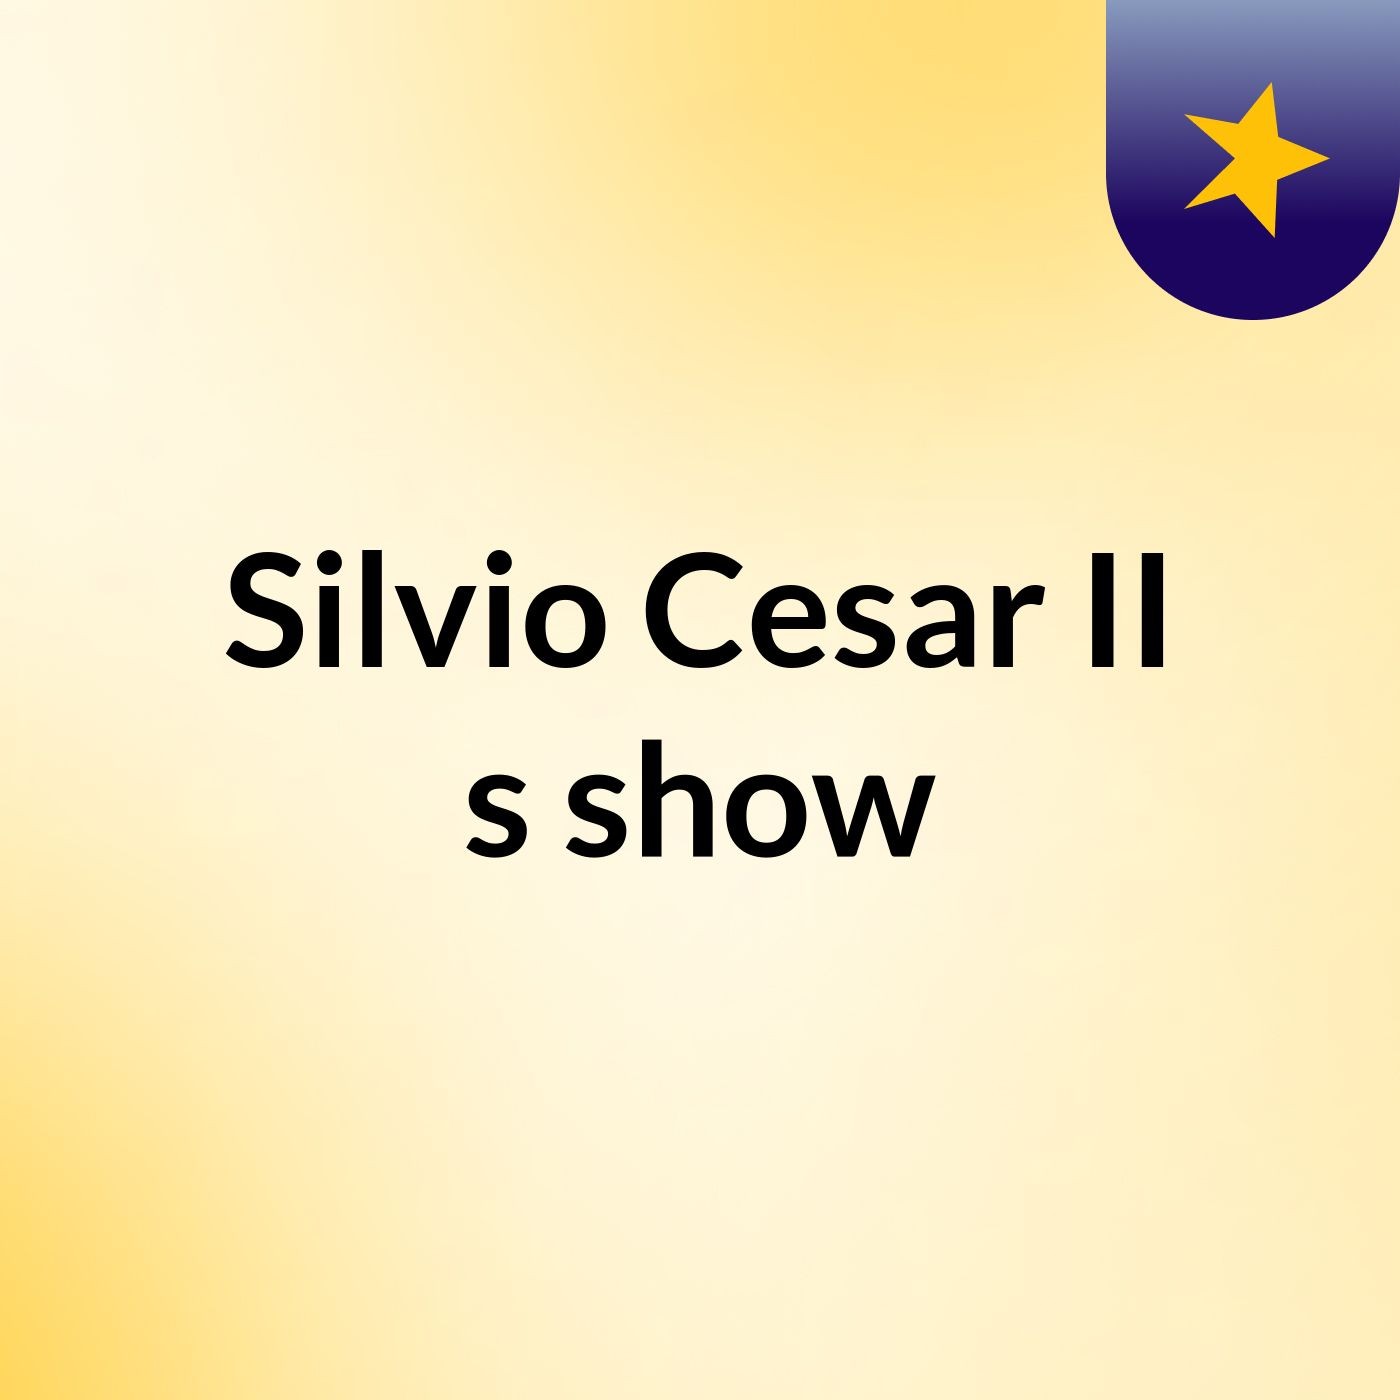 Silvio Cesar II's show